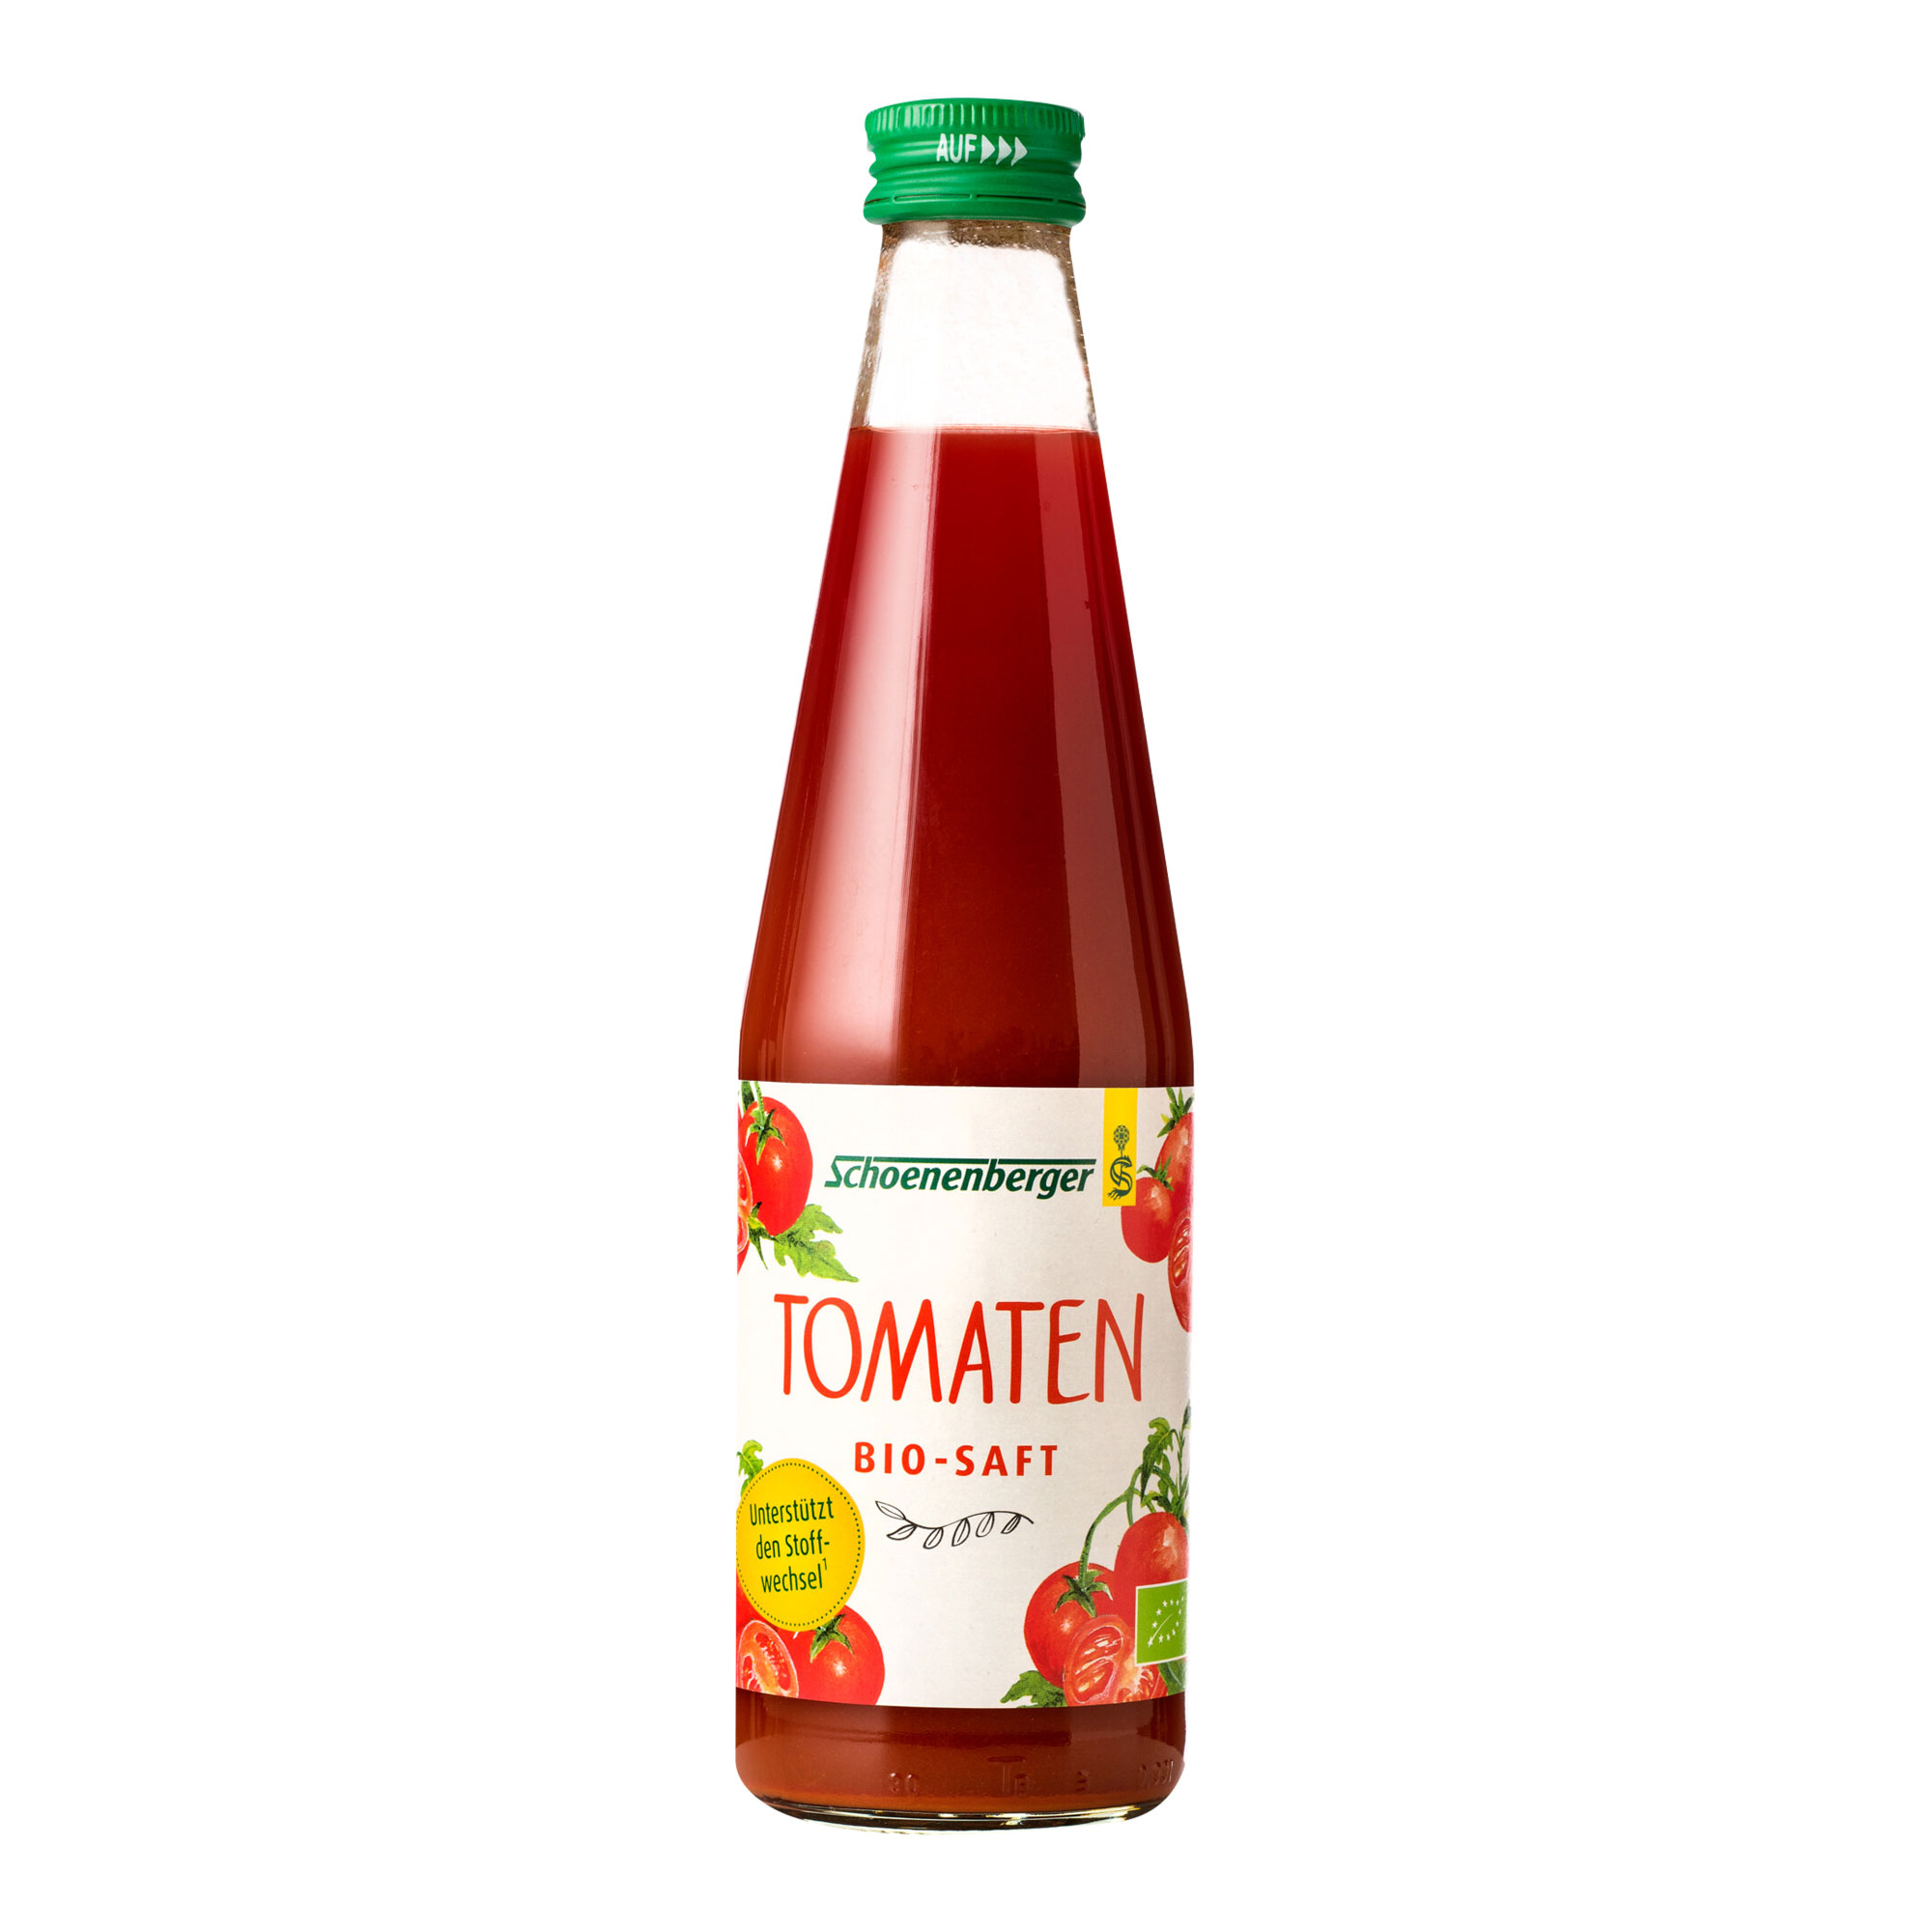 Tomaten Bio-Saft ohne Zusatz von Salz und Gewürzen.